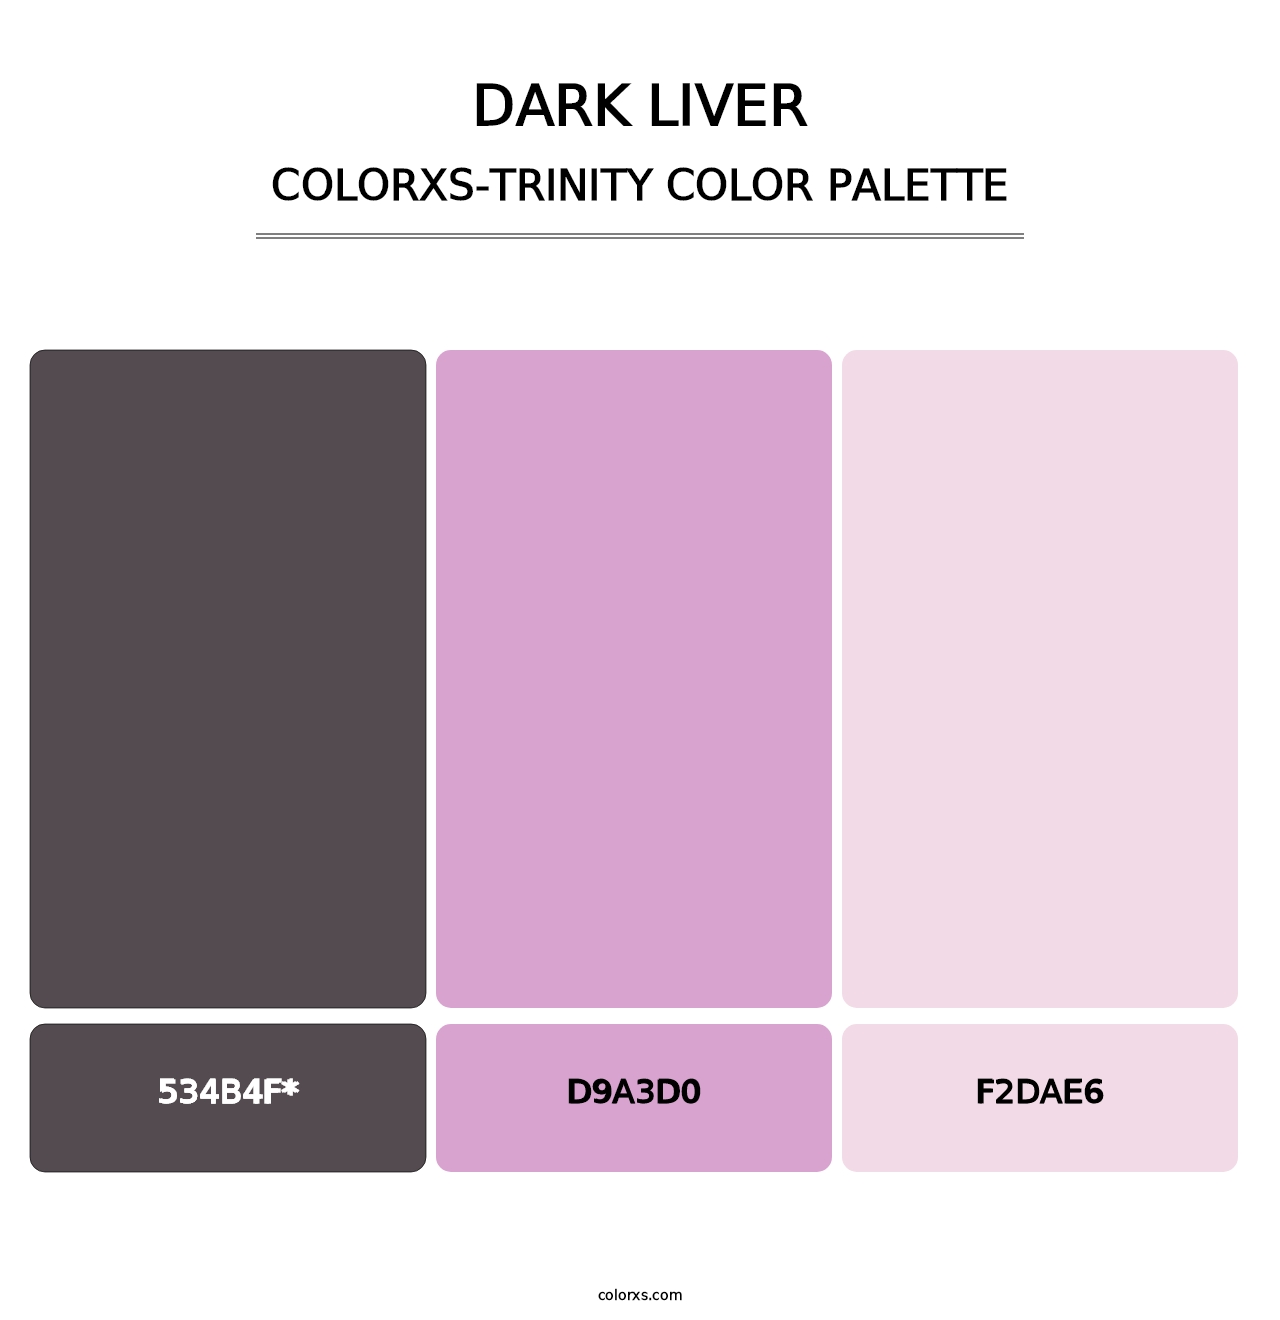 Dark Liver - Colorxs Trinity Palette